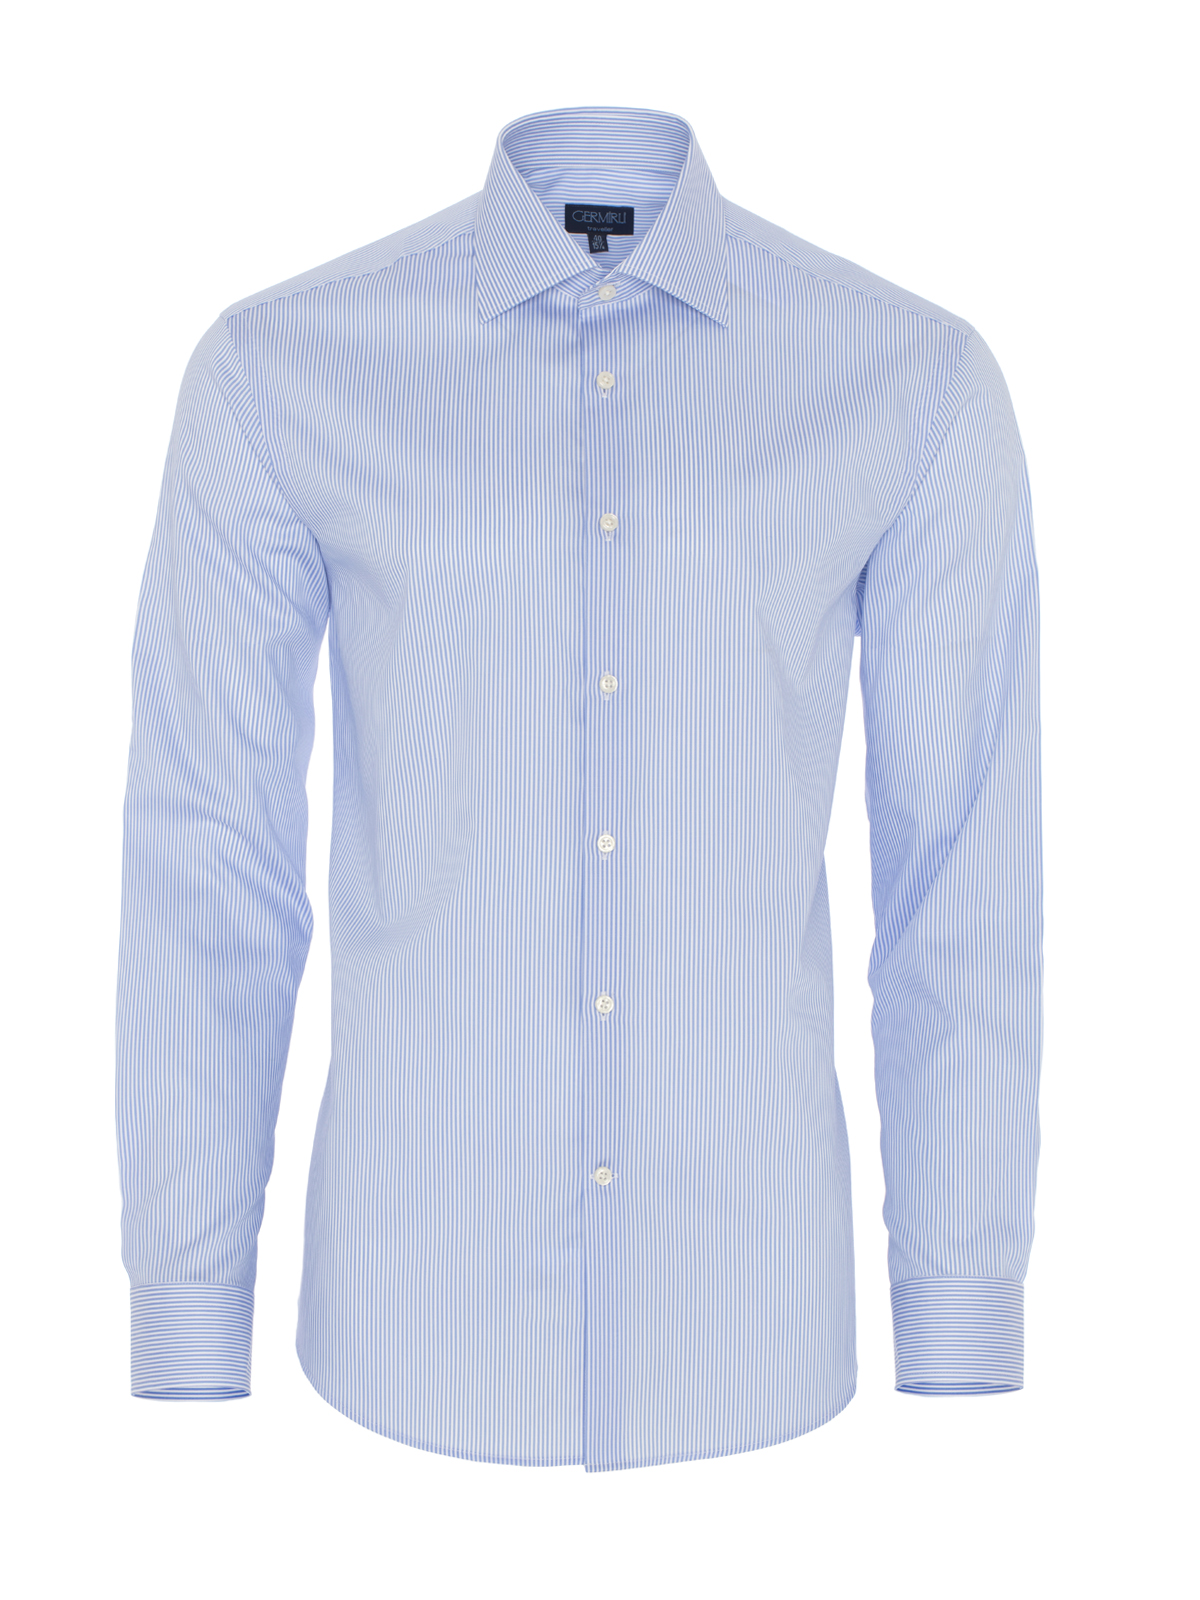 Germirli - Germirli Non Iron Light Blue Pencil Stripe Tailor Fit Shirt